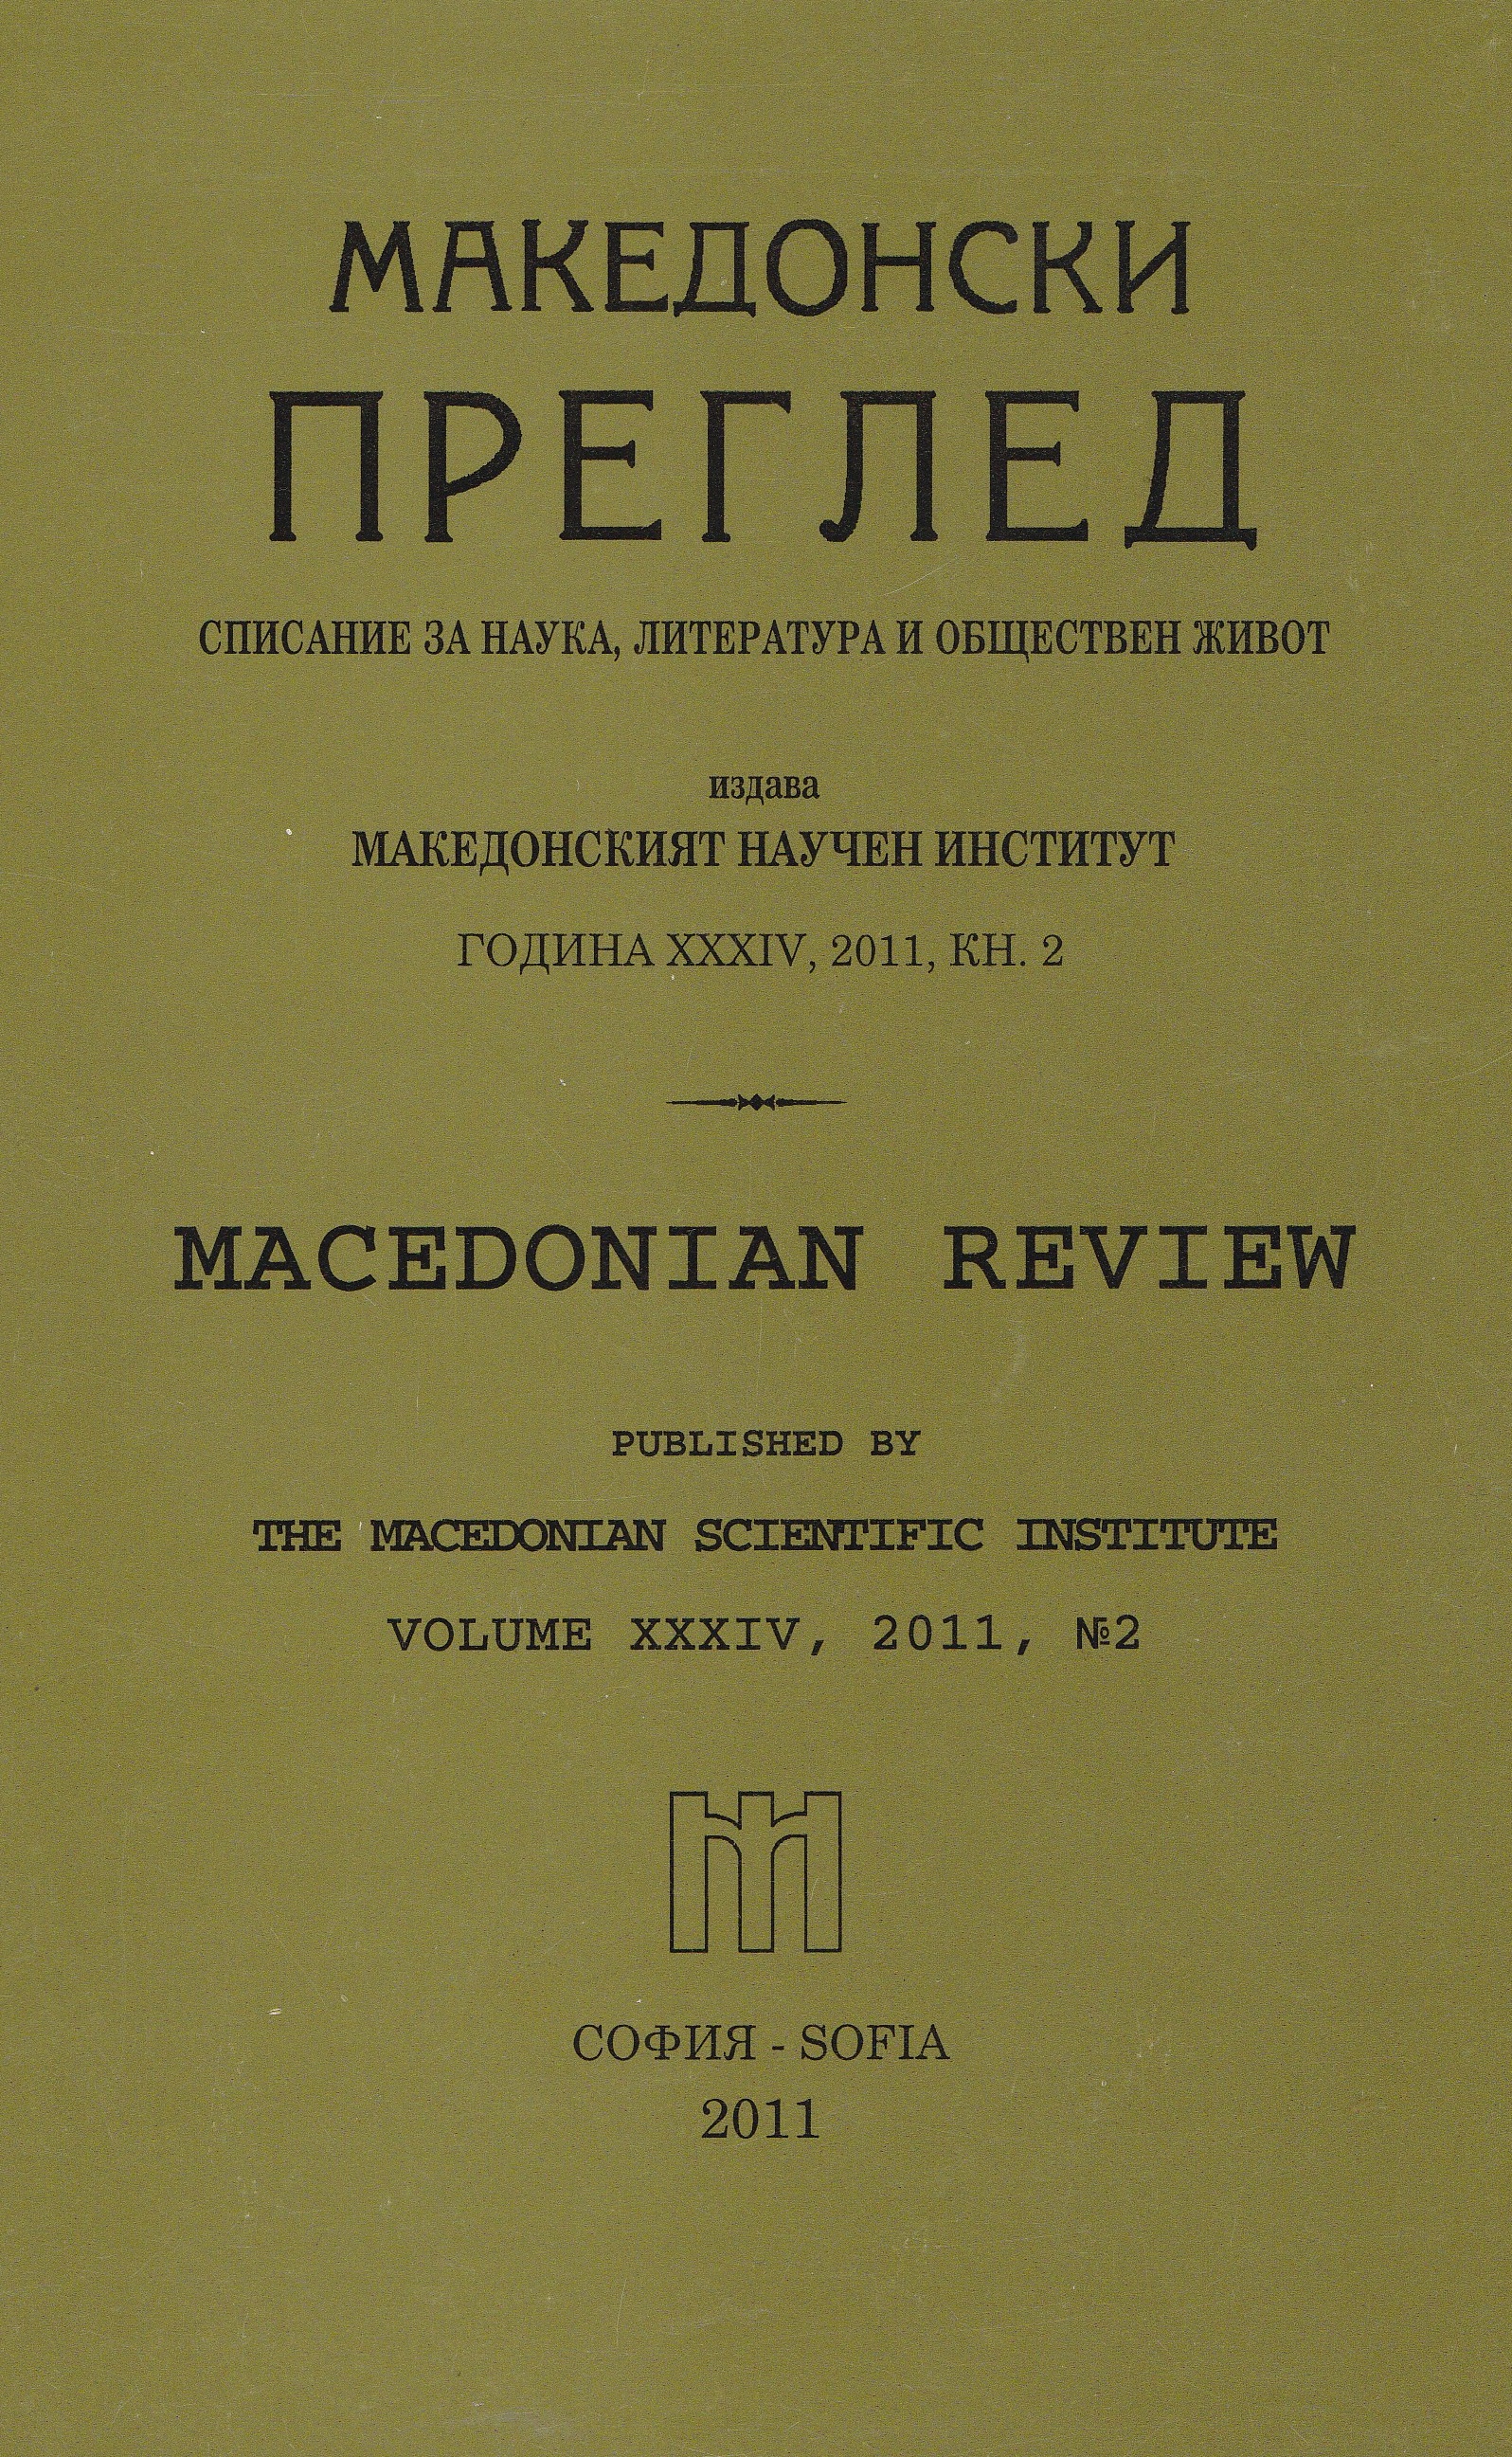 Научна конференция „Националното обединение на България" 1940 - 1944 г.